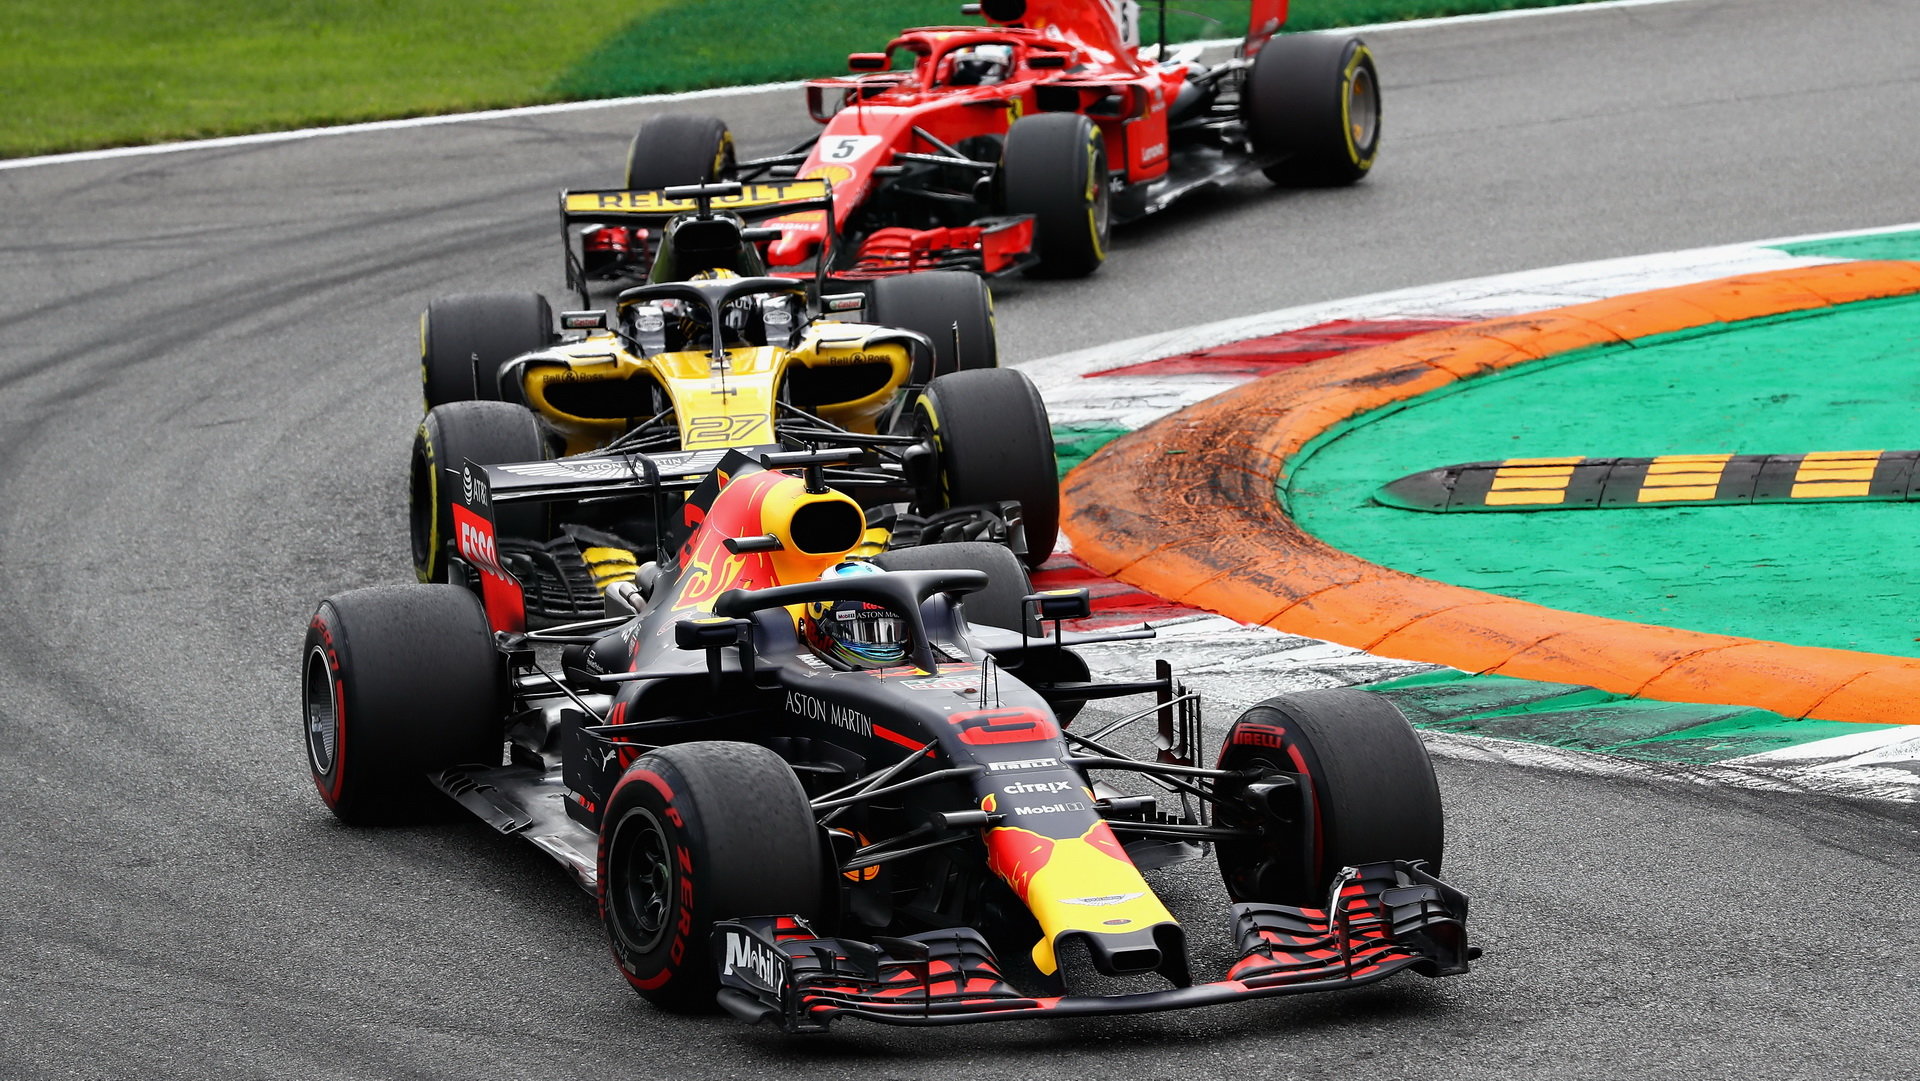 Daniel Ricciardo a Nico Hülkenberg v závodě v Monze